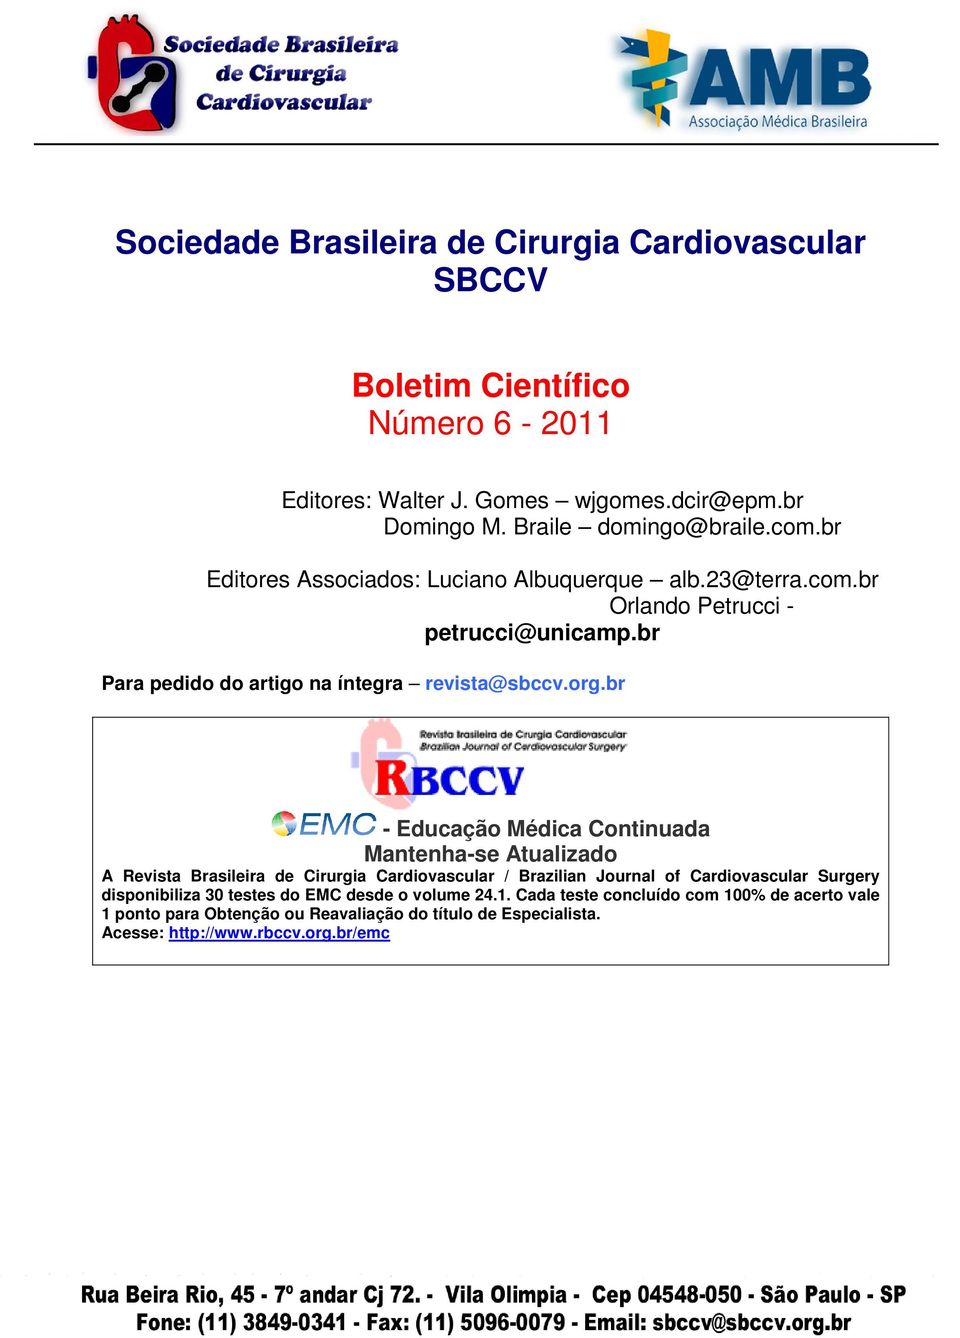 br - Educação Médica Continuada Mantenha-se Atualizado A Revista Brasileira de Cirurgia Cardiovascular / Brazilian Journal of Cardiovascular Surgery disponibiliza 30